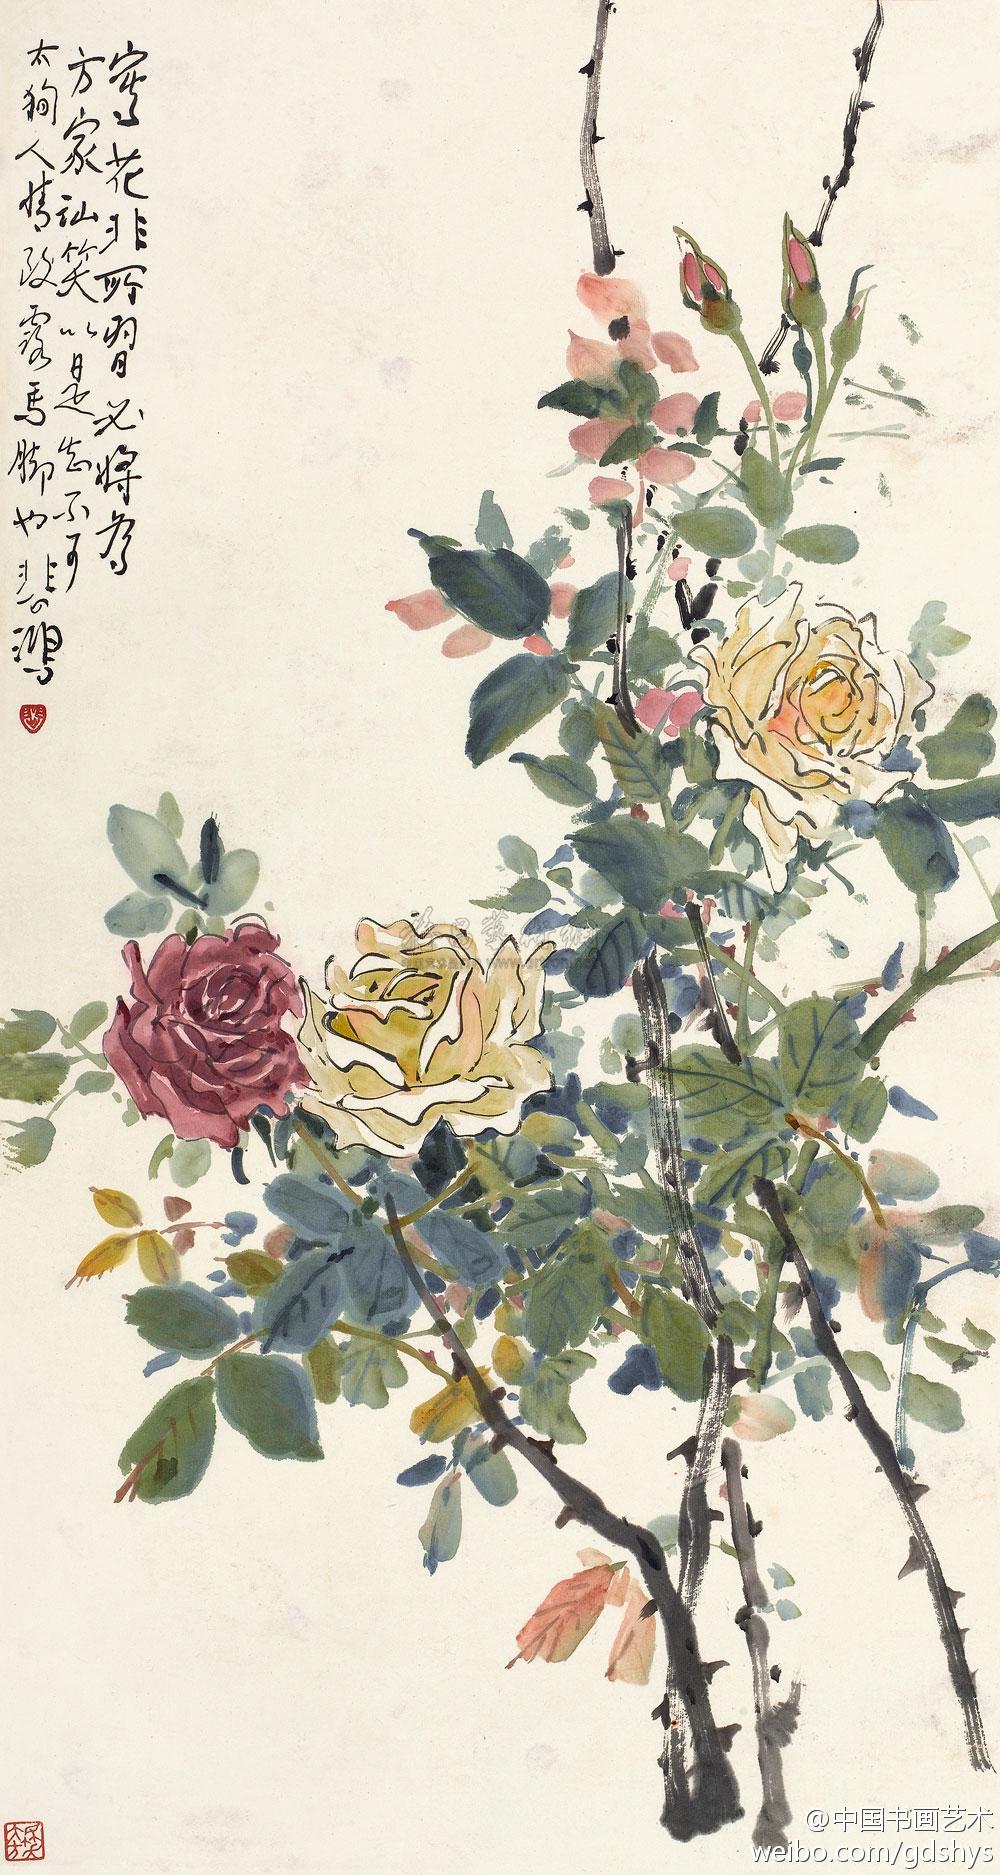 似是目前仅见的徐悲鸿将中国传统的折枝构图与西方油画的写实描绘融于